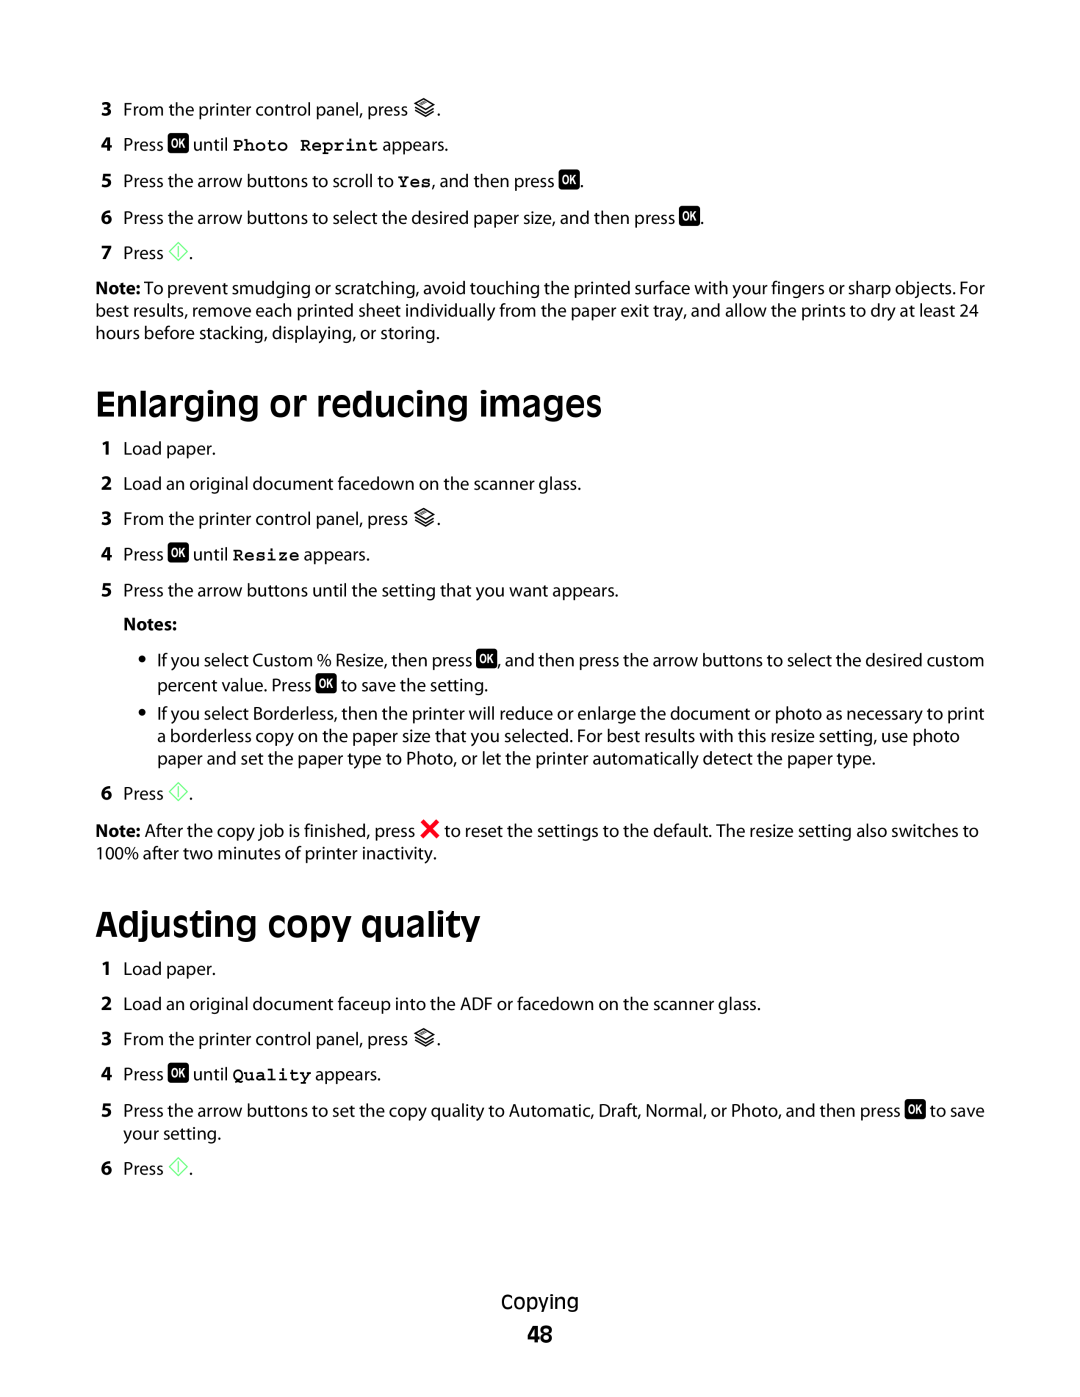 Dell V515W manual Enlarging or reducing images, Adjusting copy quality 